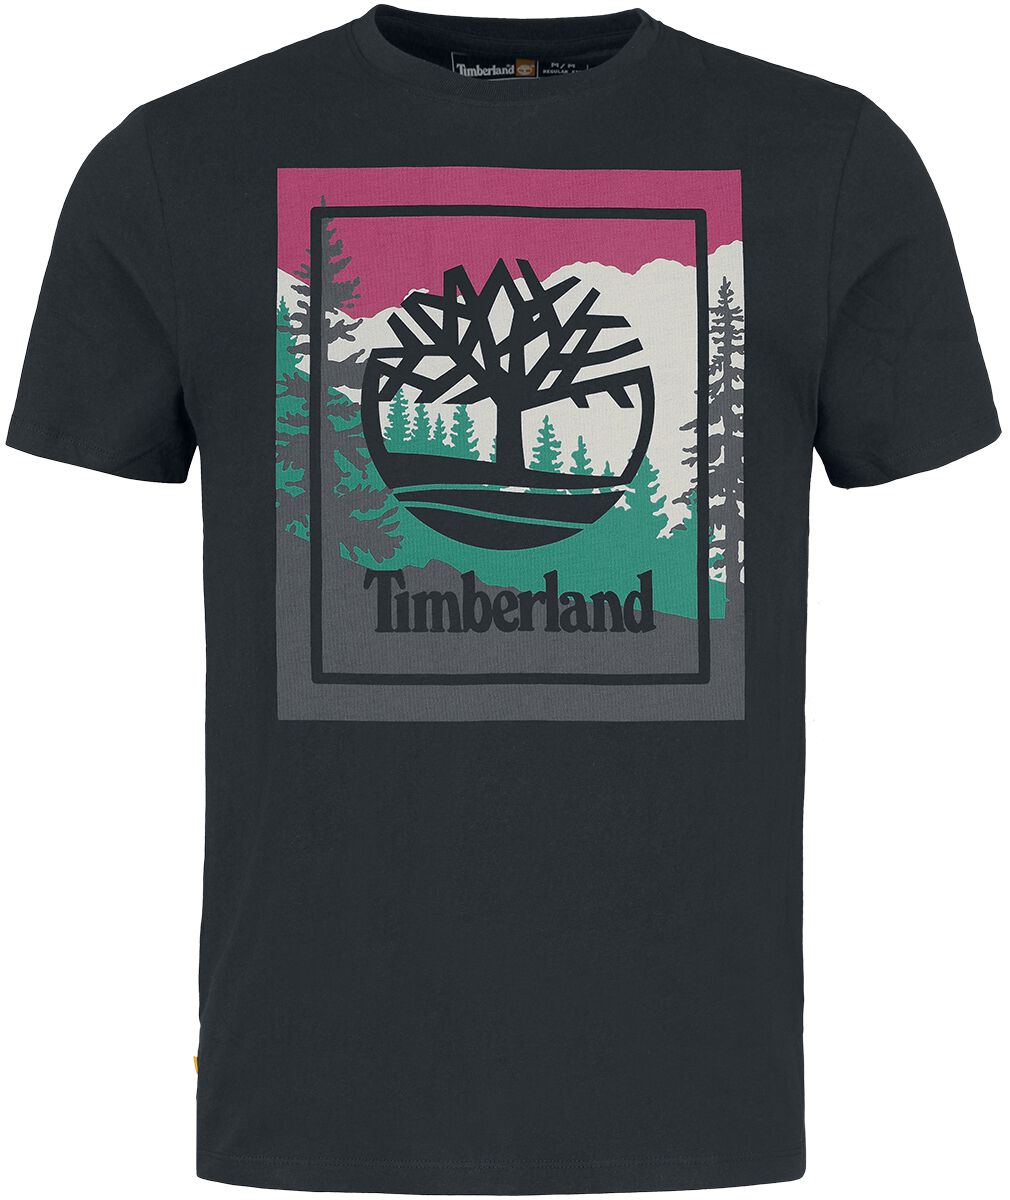 Timberland T-Shirt - Outdoor Inspired Graphic Tee - S bis L - für Männer - Größe S - schwarz